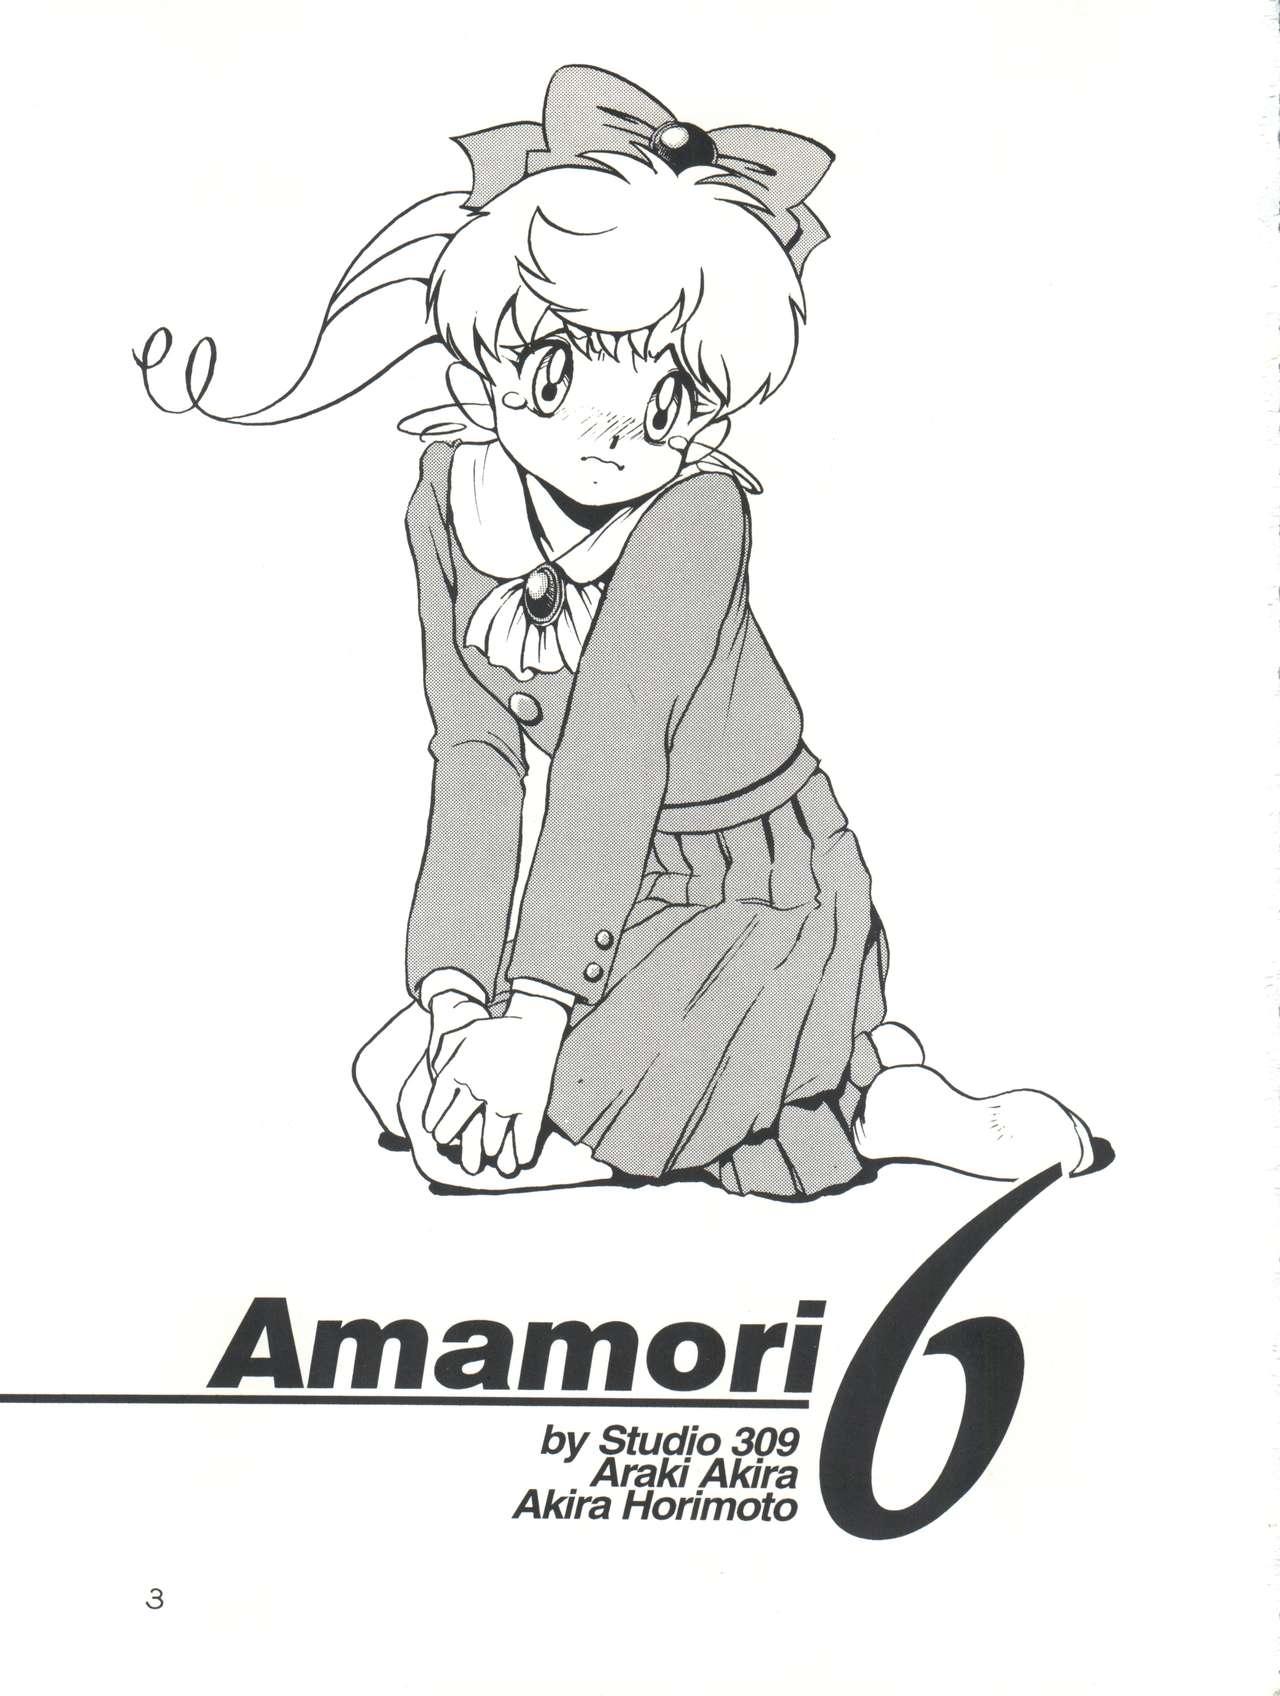 Amamori 6 2